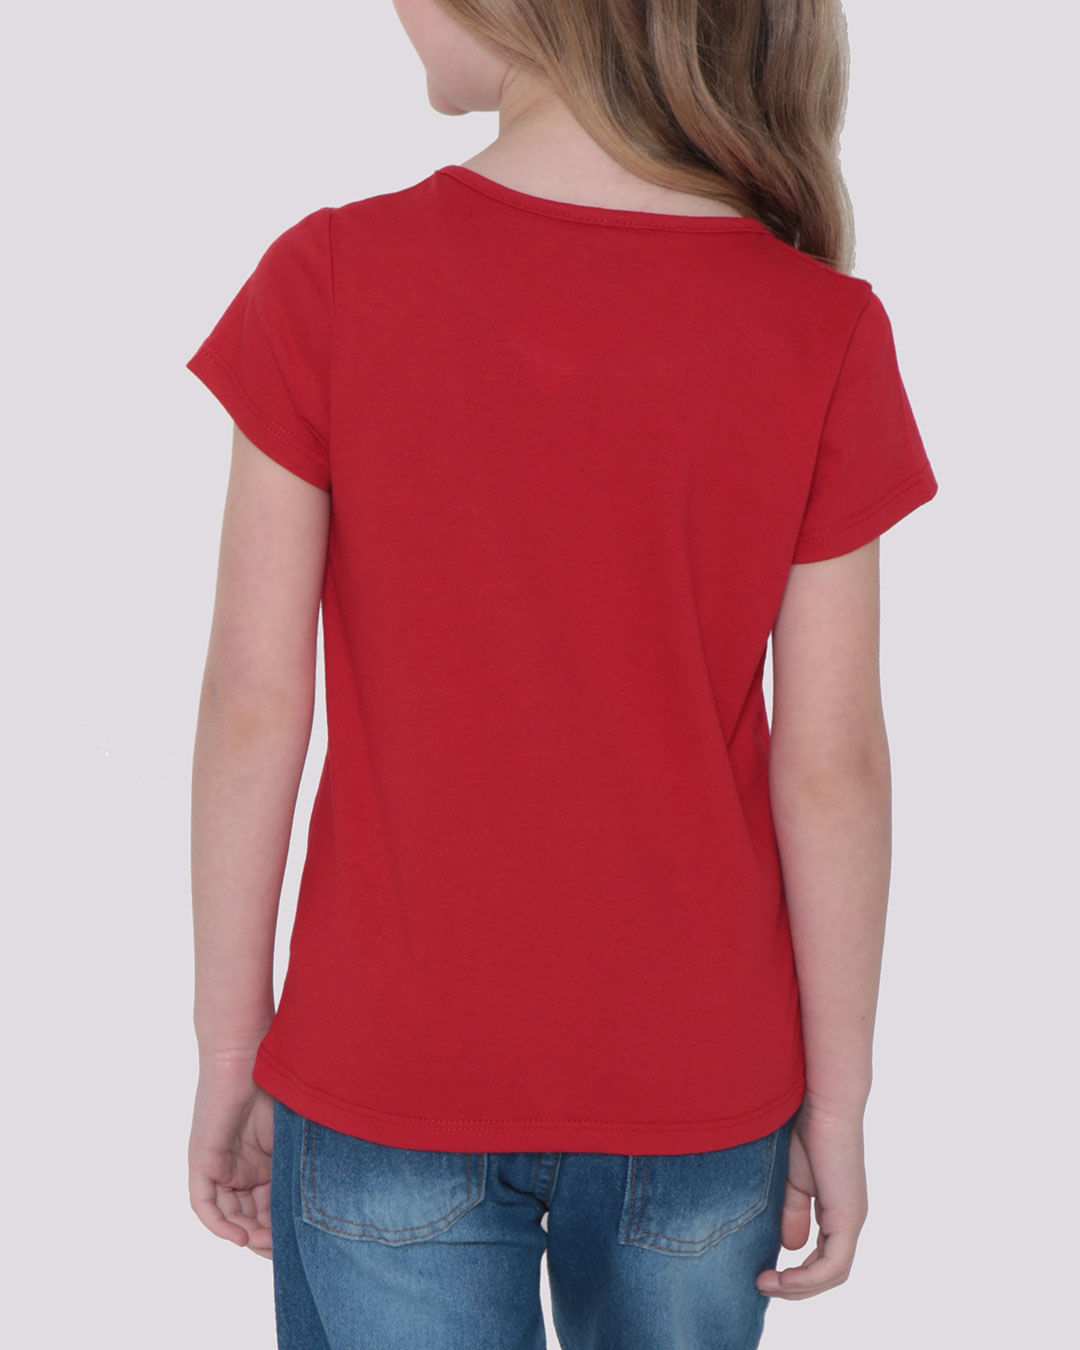 Camiseta-Infantil-Mulher-Maravilha-Liga-da-Justica-Vermelha